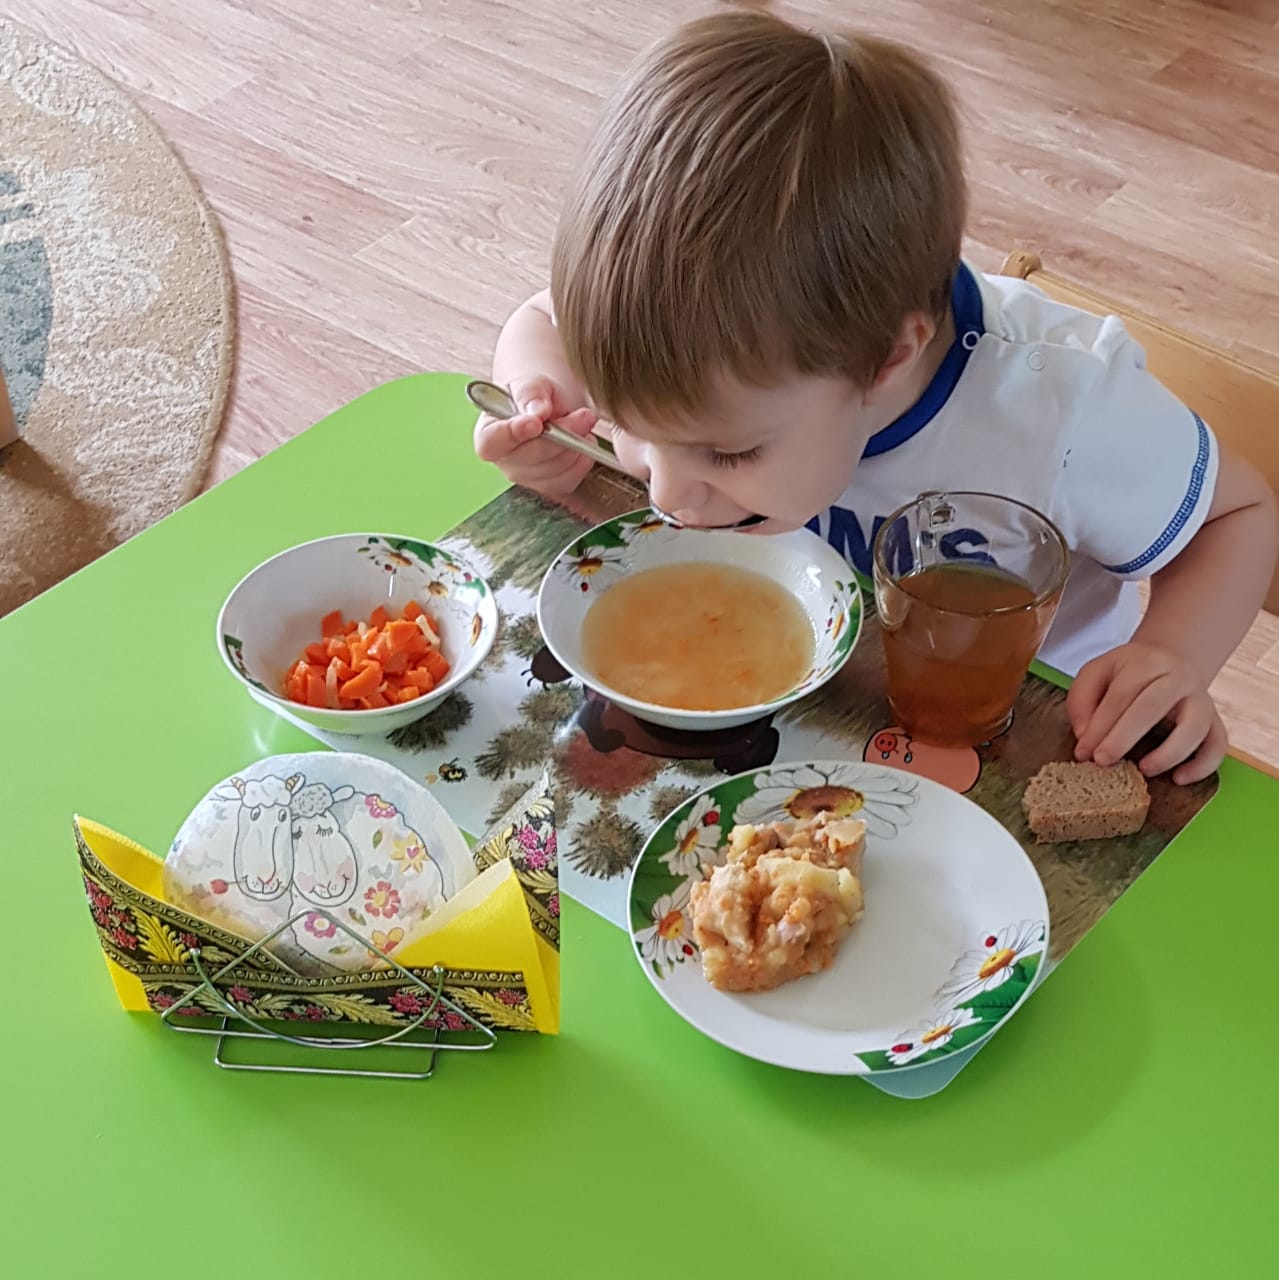 еда в детском саду фото